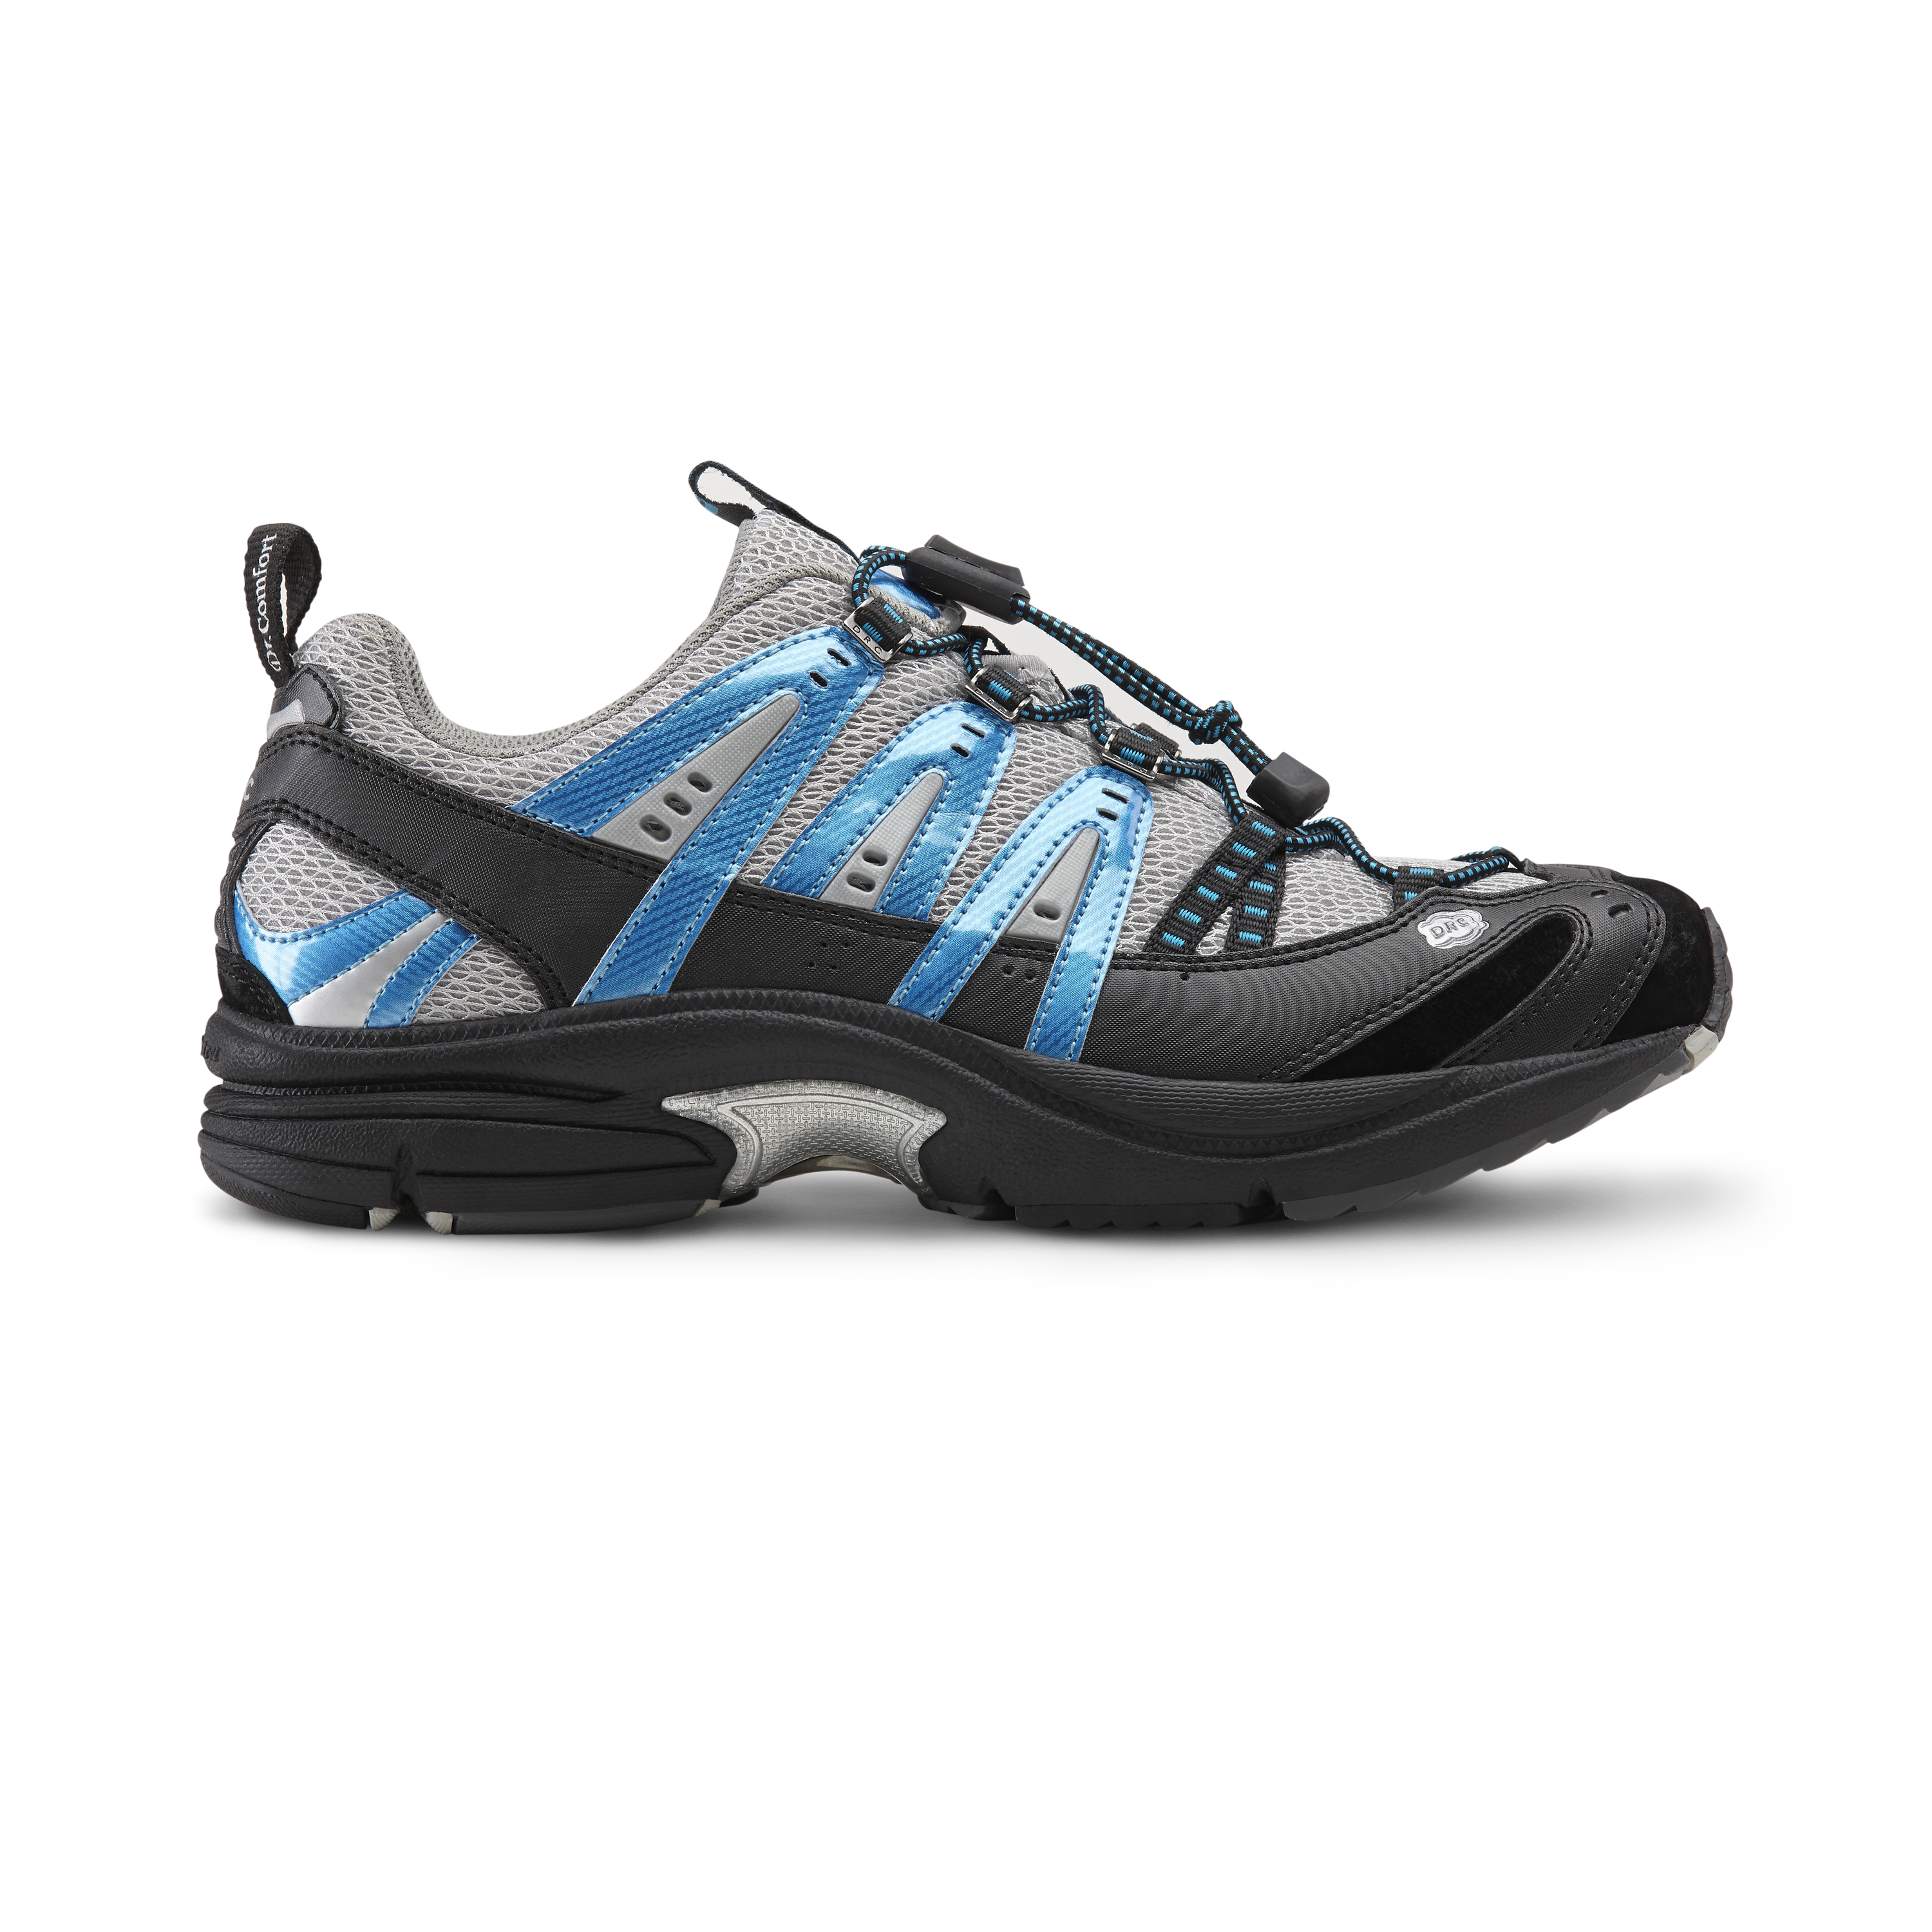 Zusatzbild DR. COMFORT® Performance blau, außen, Orthopädische Schuhe, Ideal für den aktiven Mann. Leichter und komfortabler Freizeitschuh